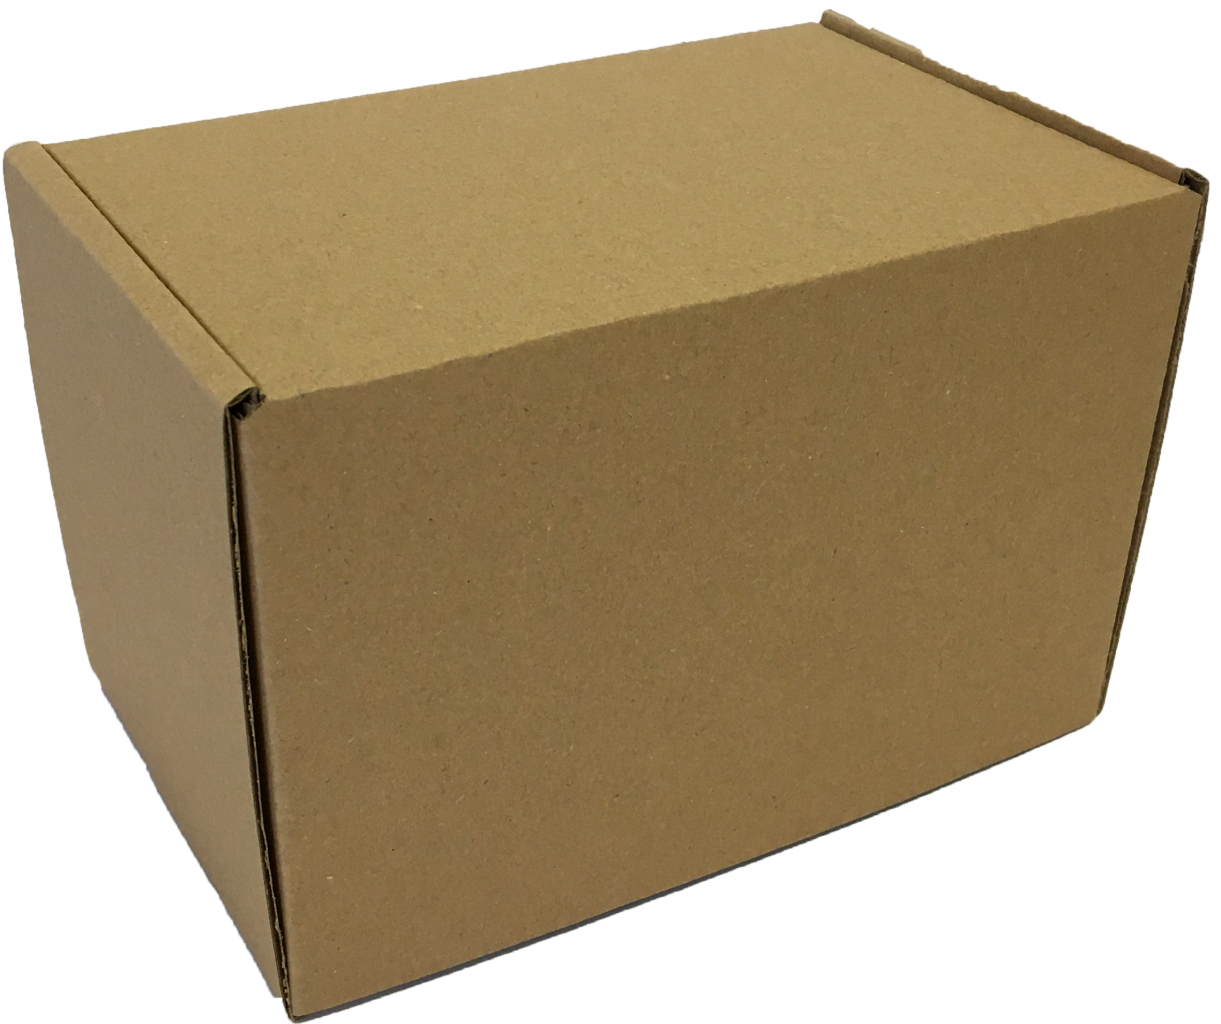 Kis méretű önzáró tároló doboz (158x103x109 mm) Közepes méretű, felnyitható tetejű önzáródó hullámkarton tároló doboz

Felhasználás: 
Ajándéktárgyak, szerszámok, szerelvények, egyéb kisméretű tárgyak tárolására alkalmas kis méretű önzáródó hullámkarton tároló doboz.

Méret: 158x103x109 mm - hullámkarton tároló doboz

Kivitel: Fefco 0427

Anyag: mikrohullám karton papír
Színek: 
alap: barna, fehér
színes: bordó, fekete, kék, zöld